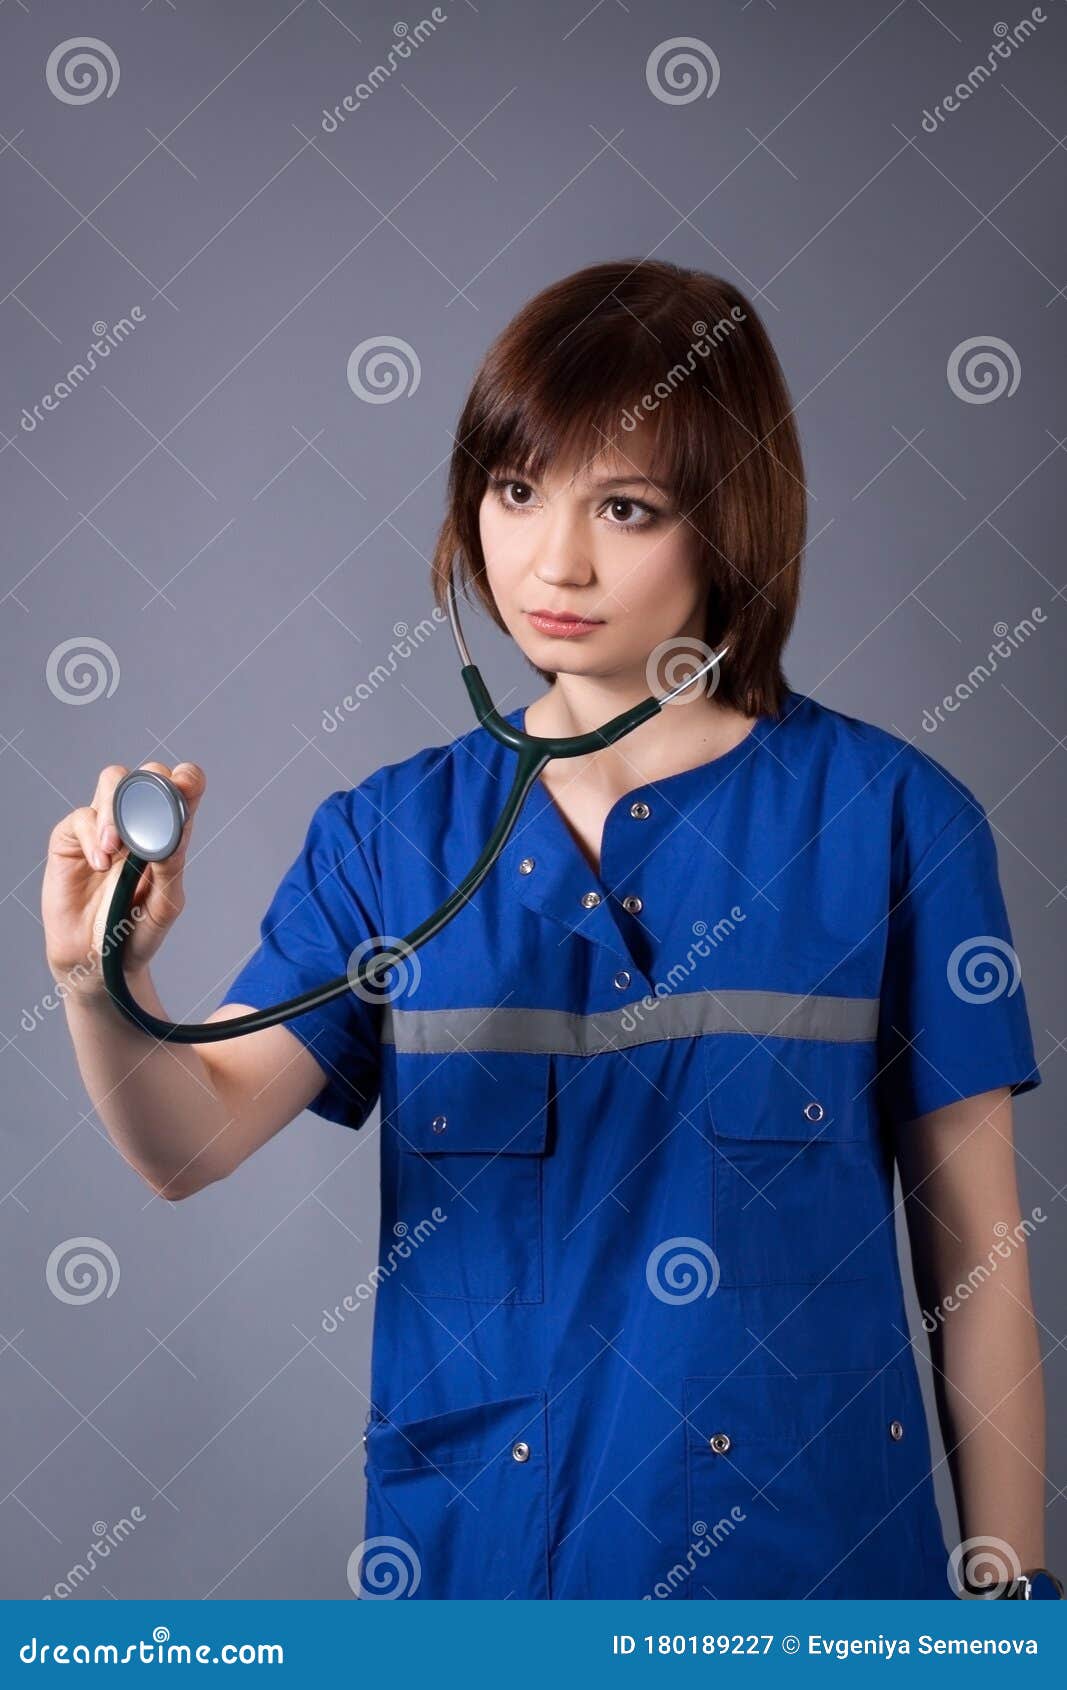 Nurse With Stethoscope Stock Photos - FreeImages.com